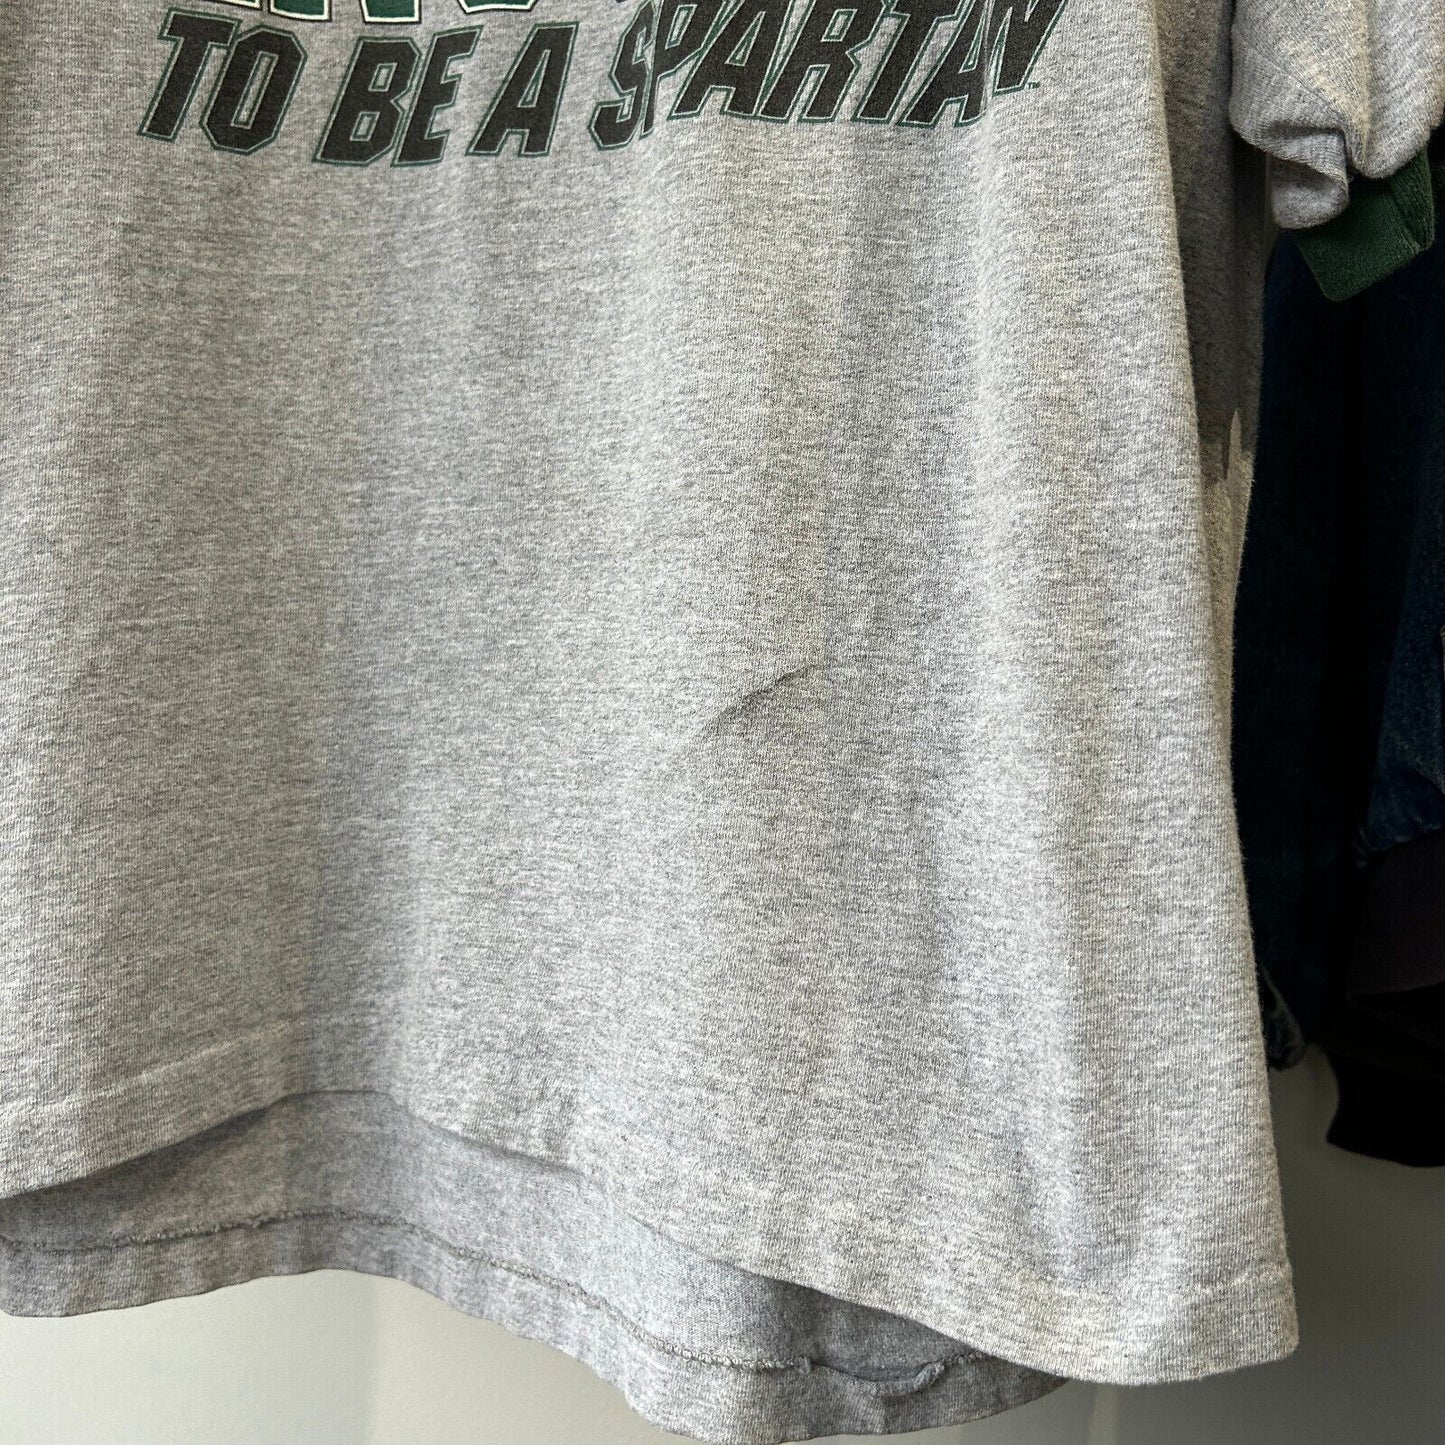 VINTAGE | Tough Enough To Be A Spartan Ringer T-Shirt sz L Adult